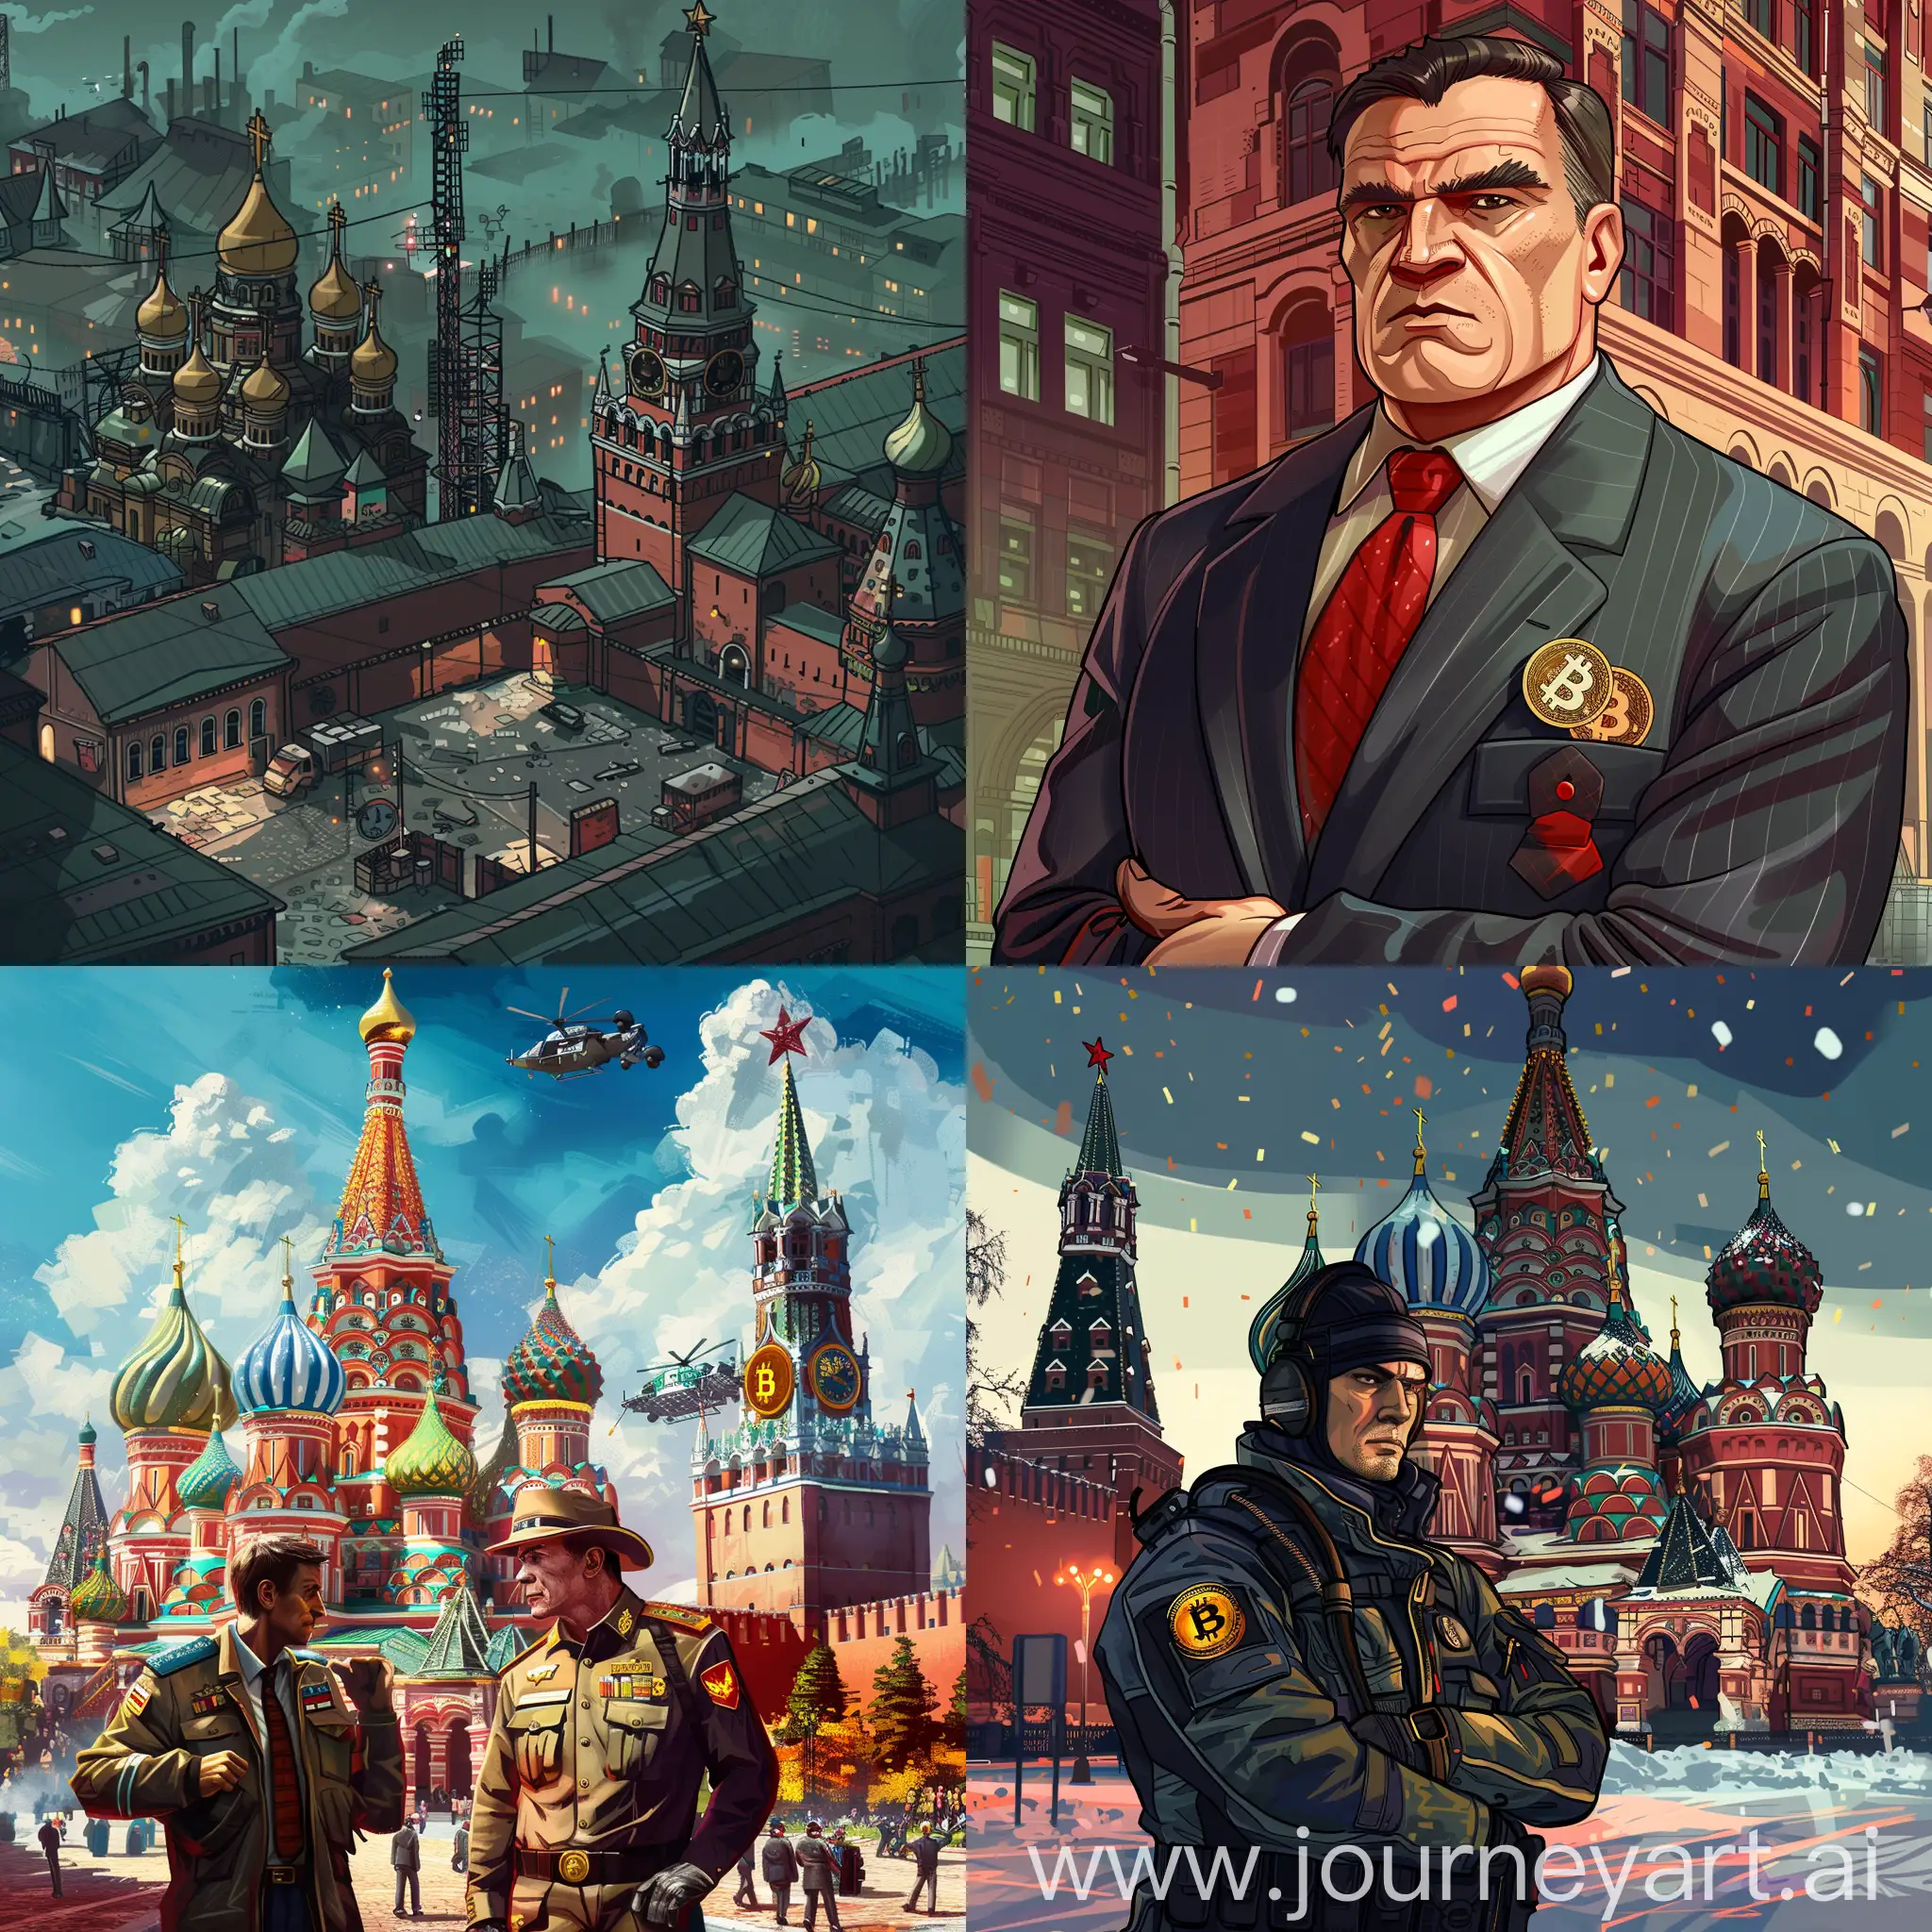 Нарисуй превью для игры про криминальную Россию, привью в честь обновления с добавлением системы майнинга криптовалют